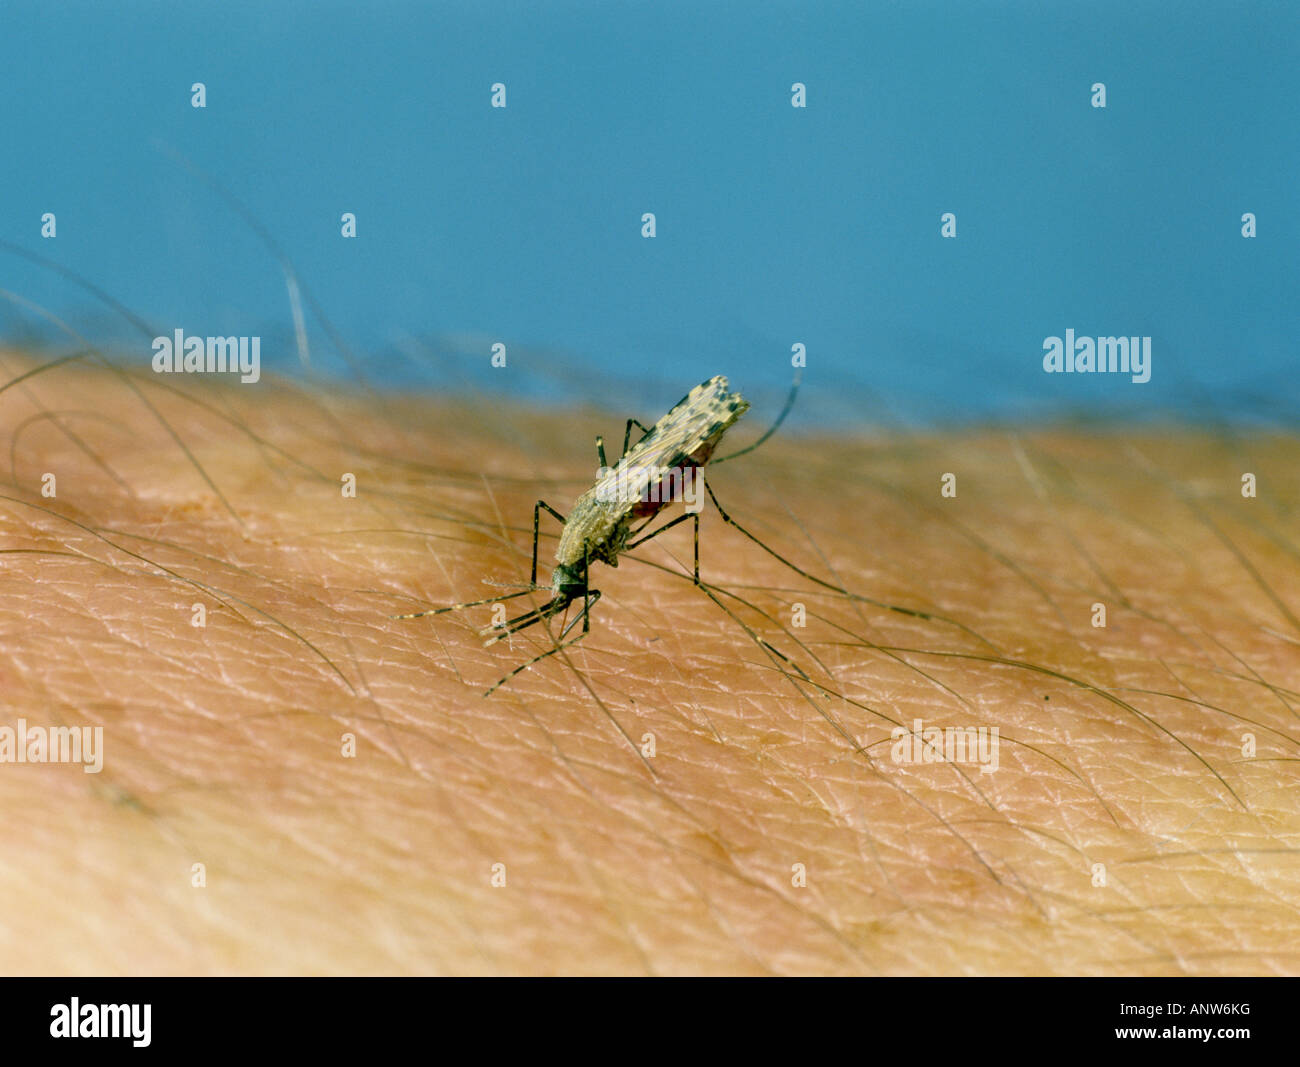 Afrikanische Malaria Vektor Mücke Anopheles Gambiae ernähren sich von Menschenhand Stockfoto